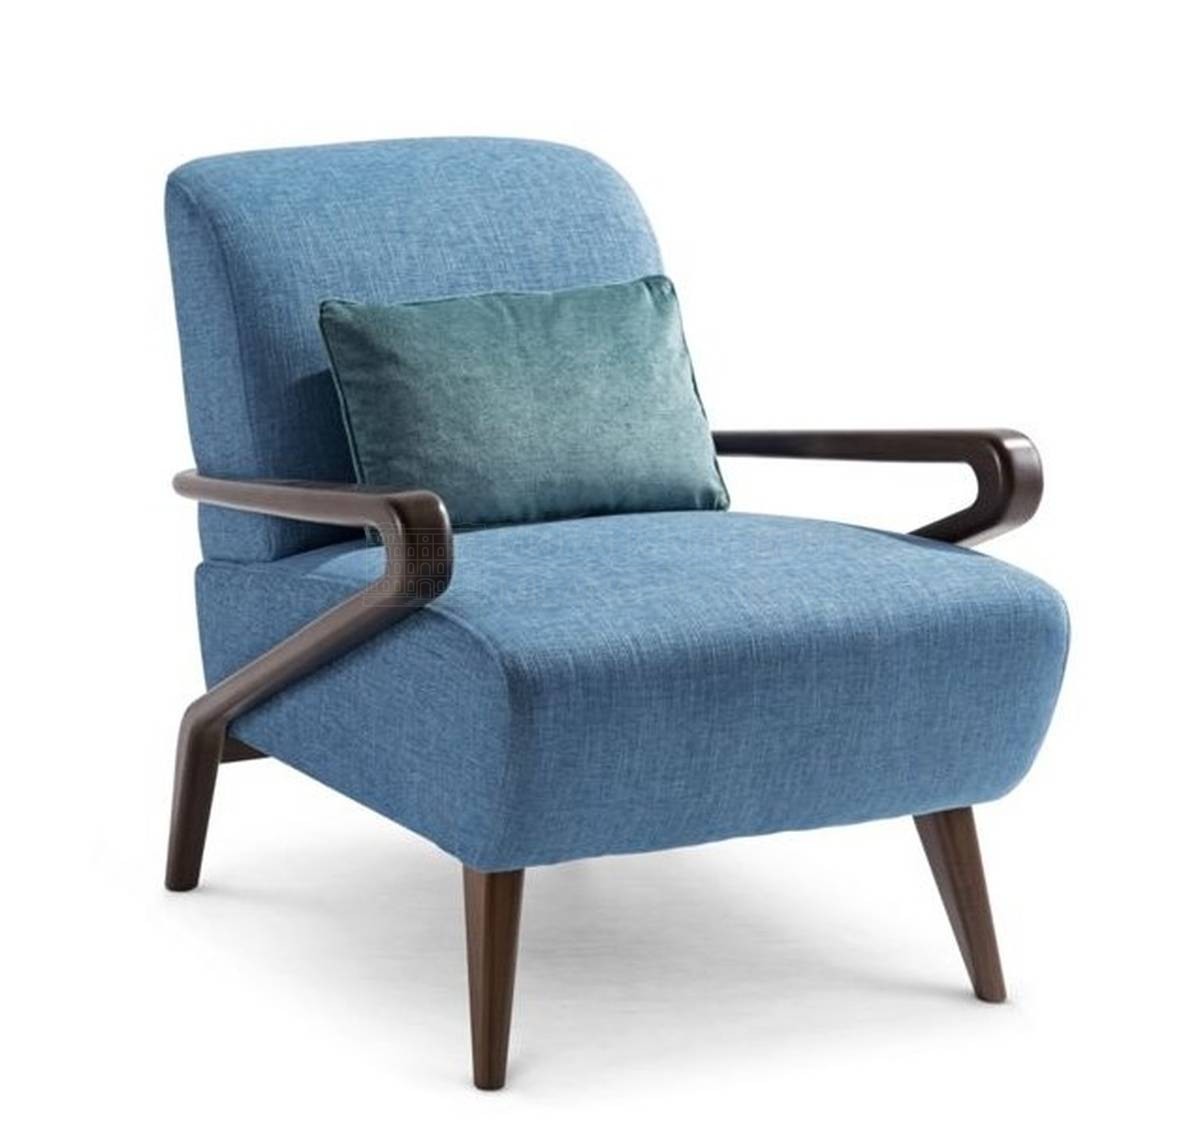 Кресло Diagonale armchair из Франции фабрики ROCHE BOBOIS